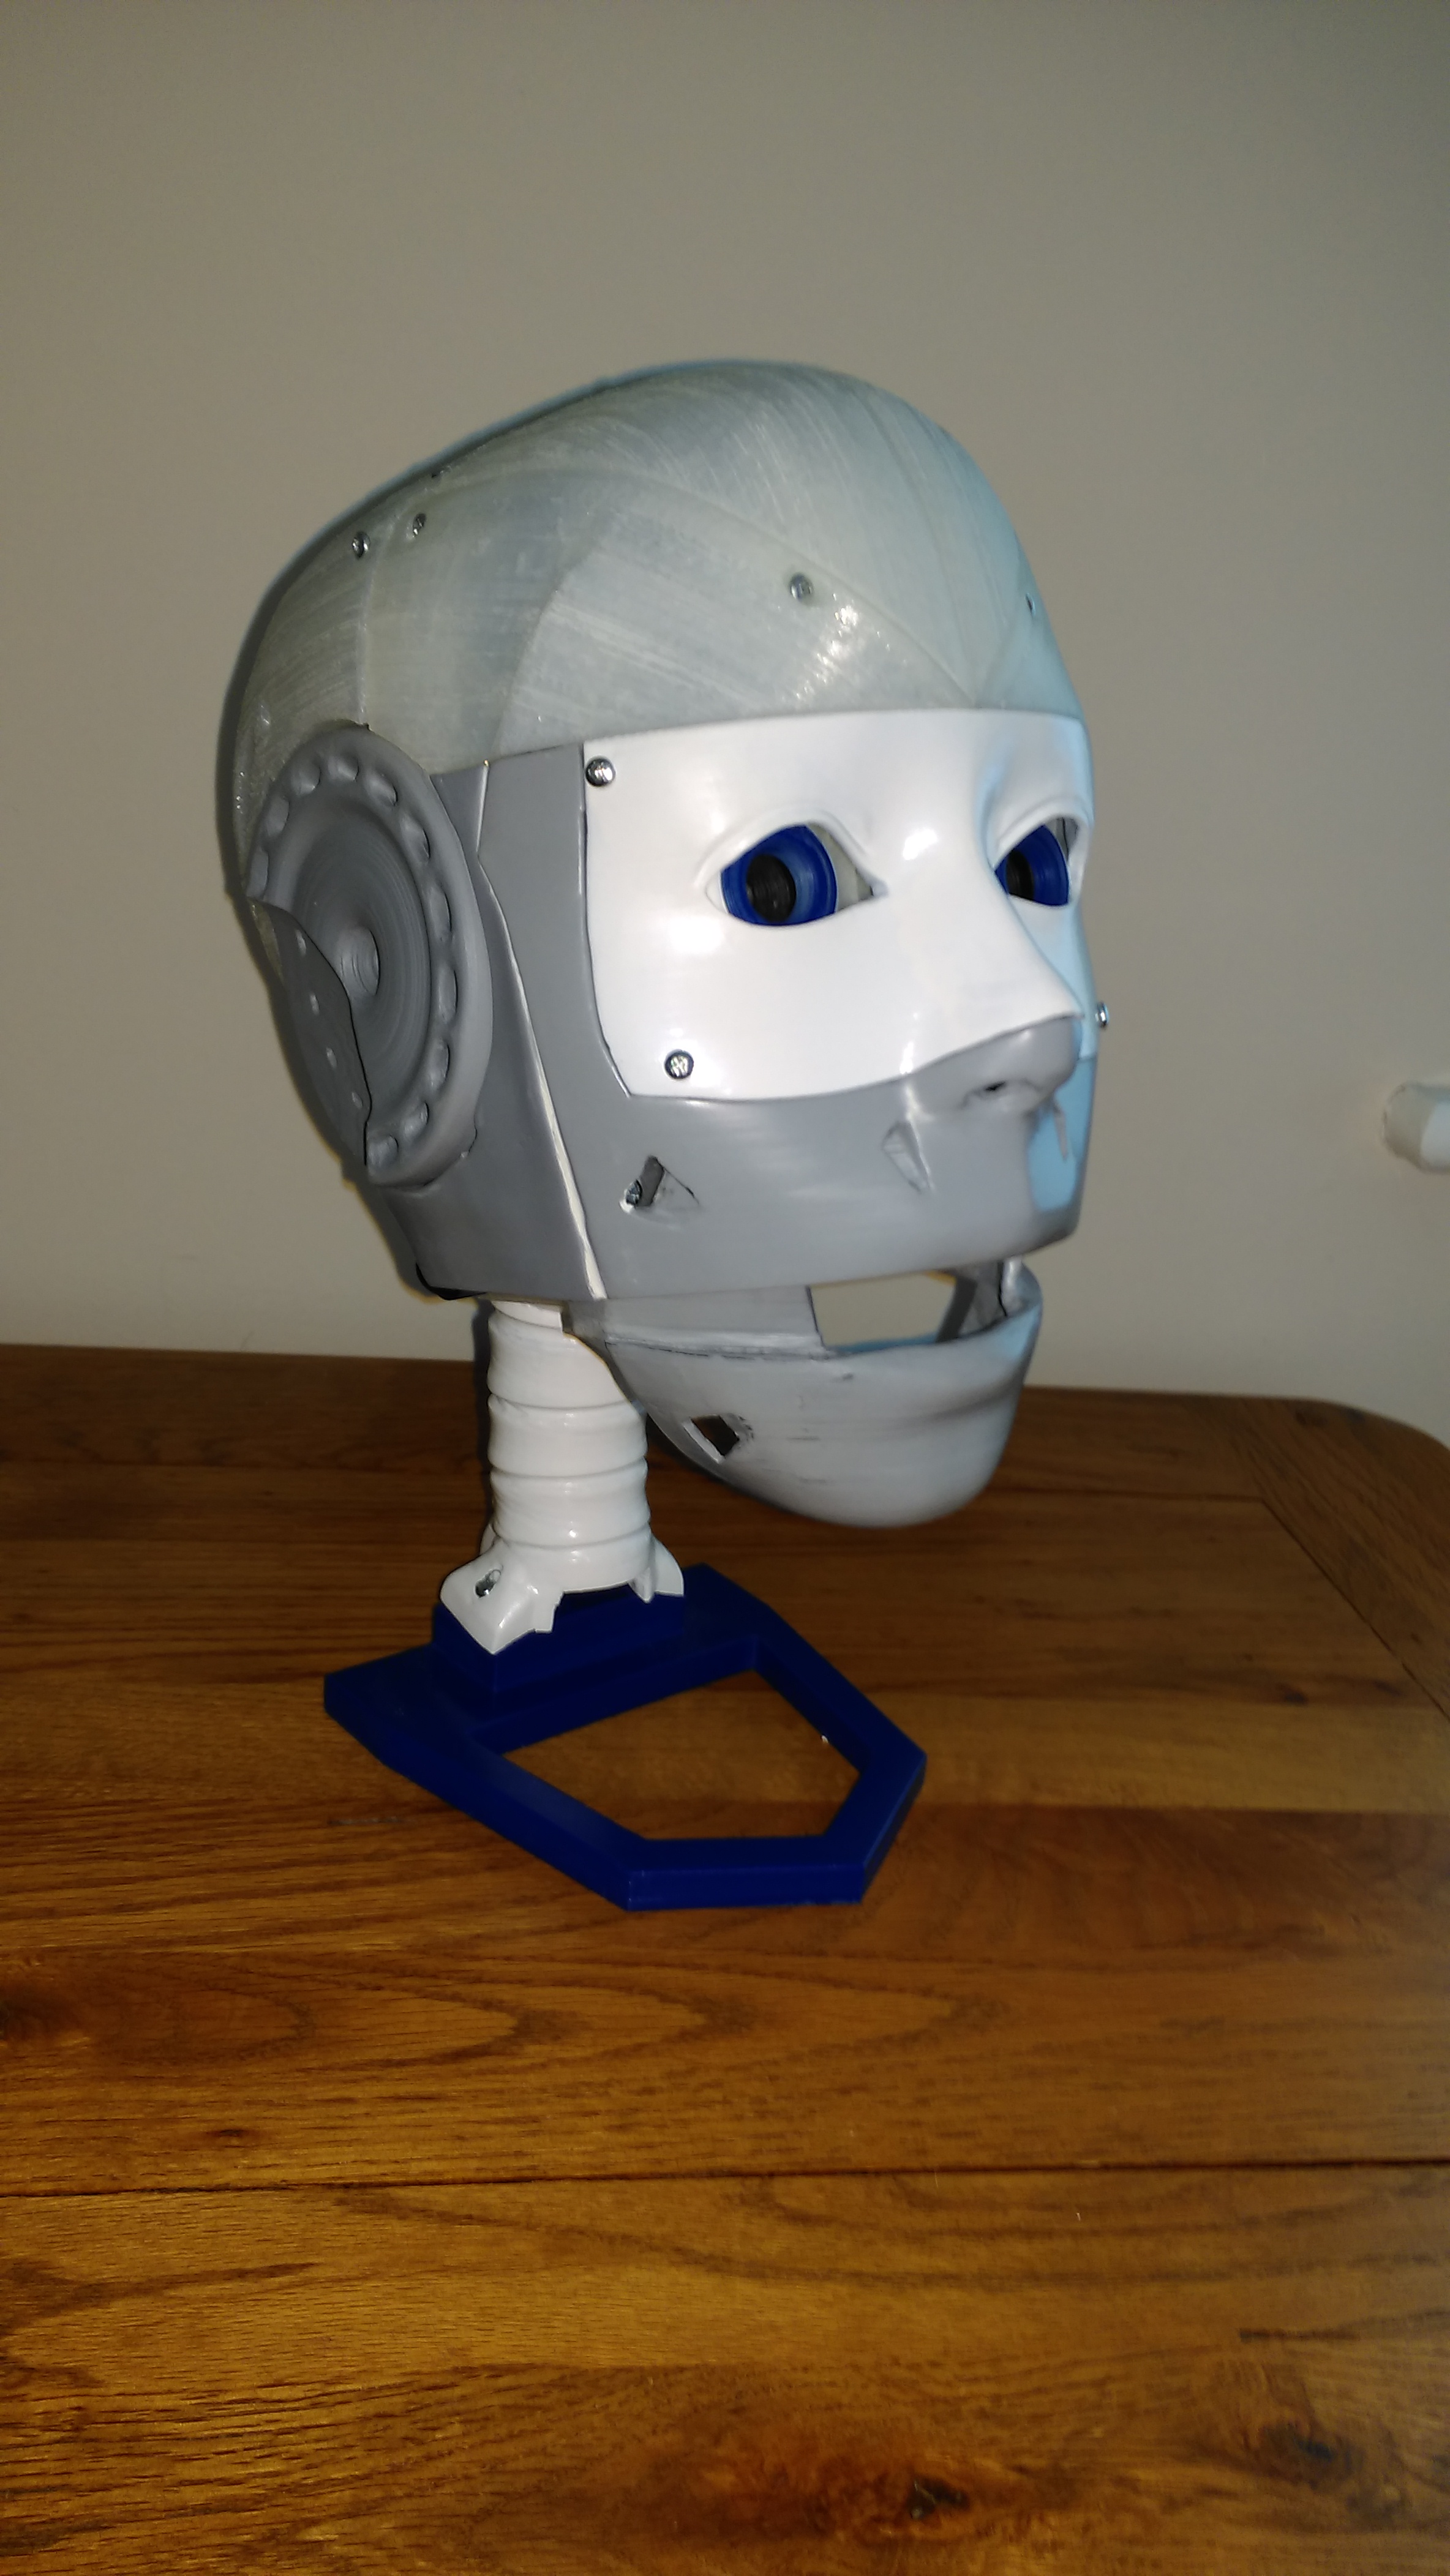 assembled robot head